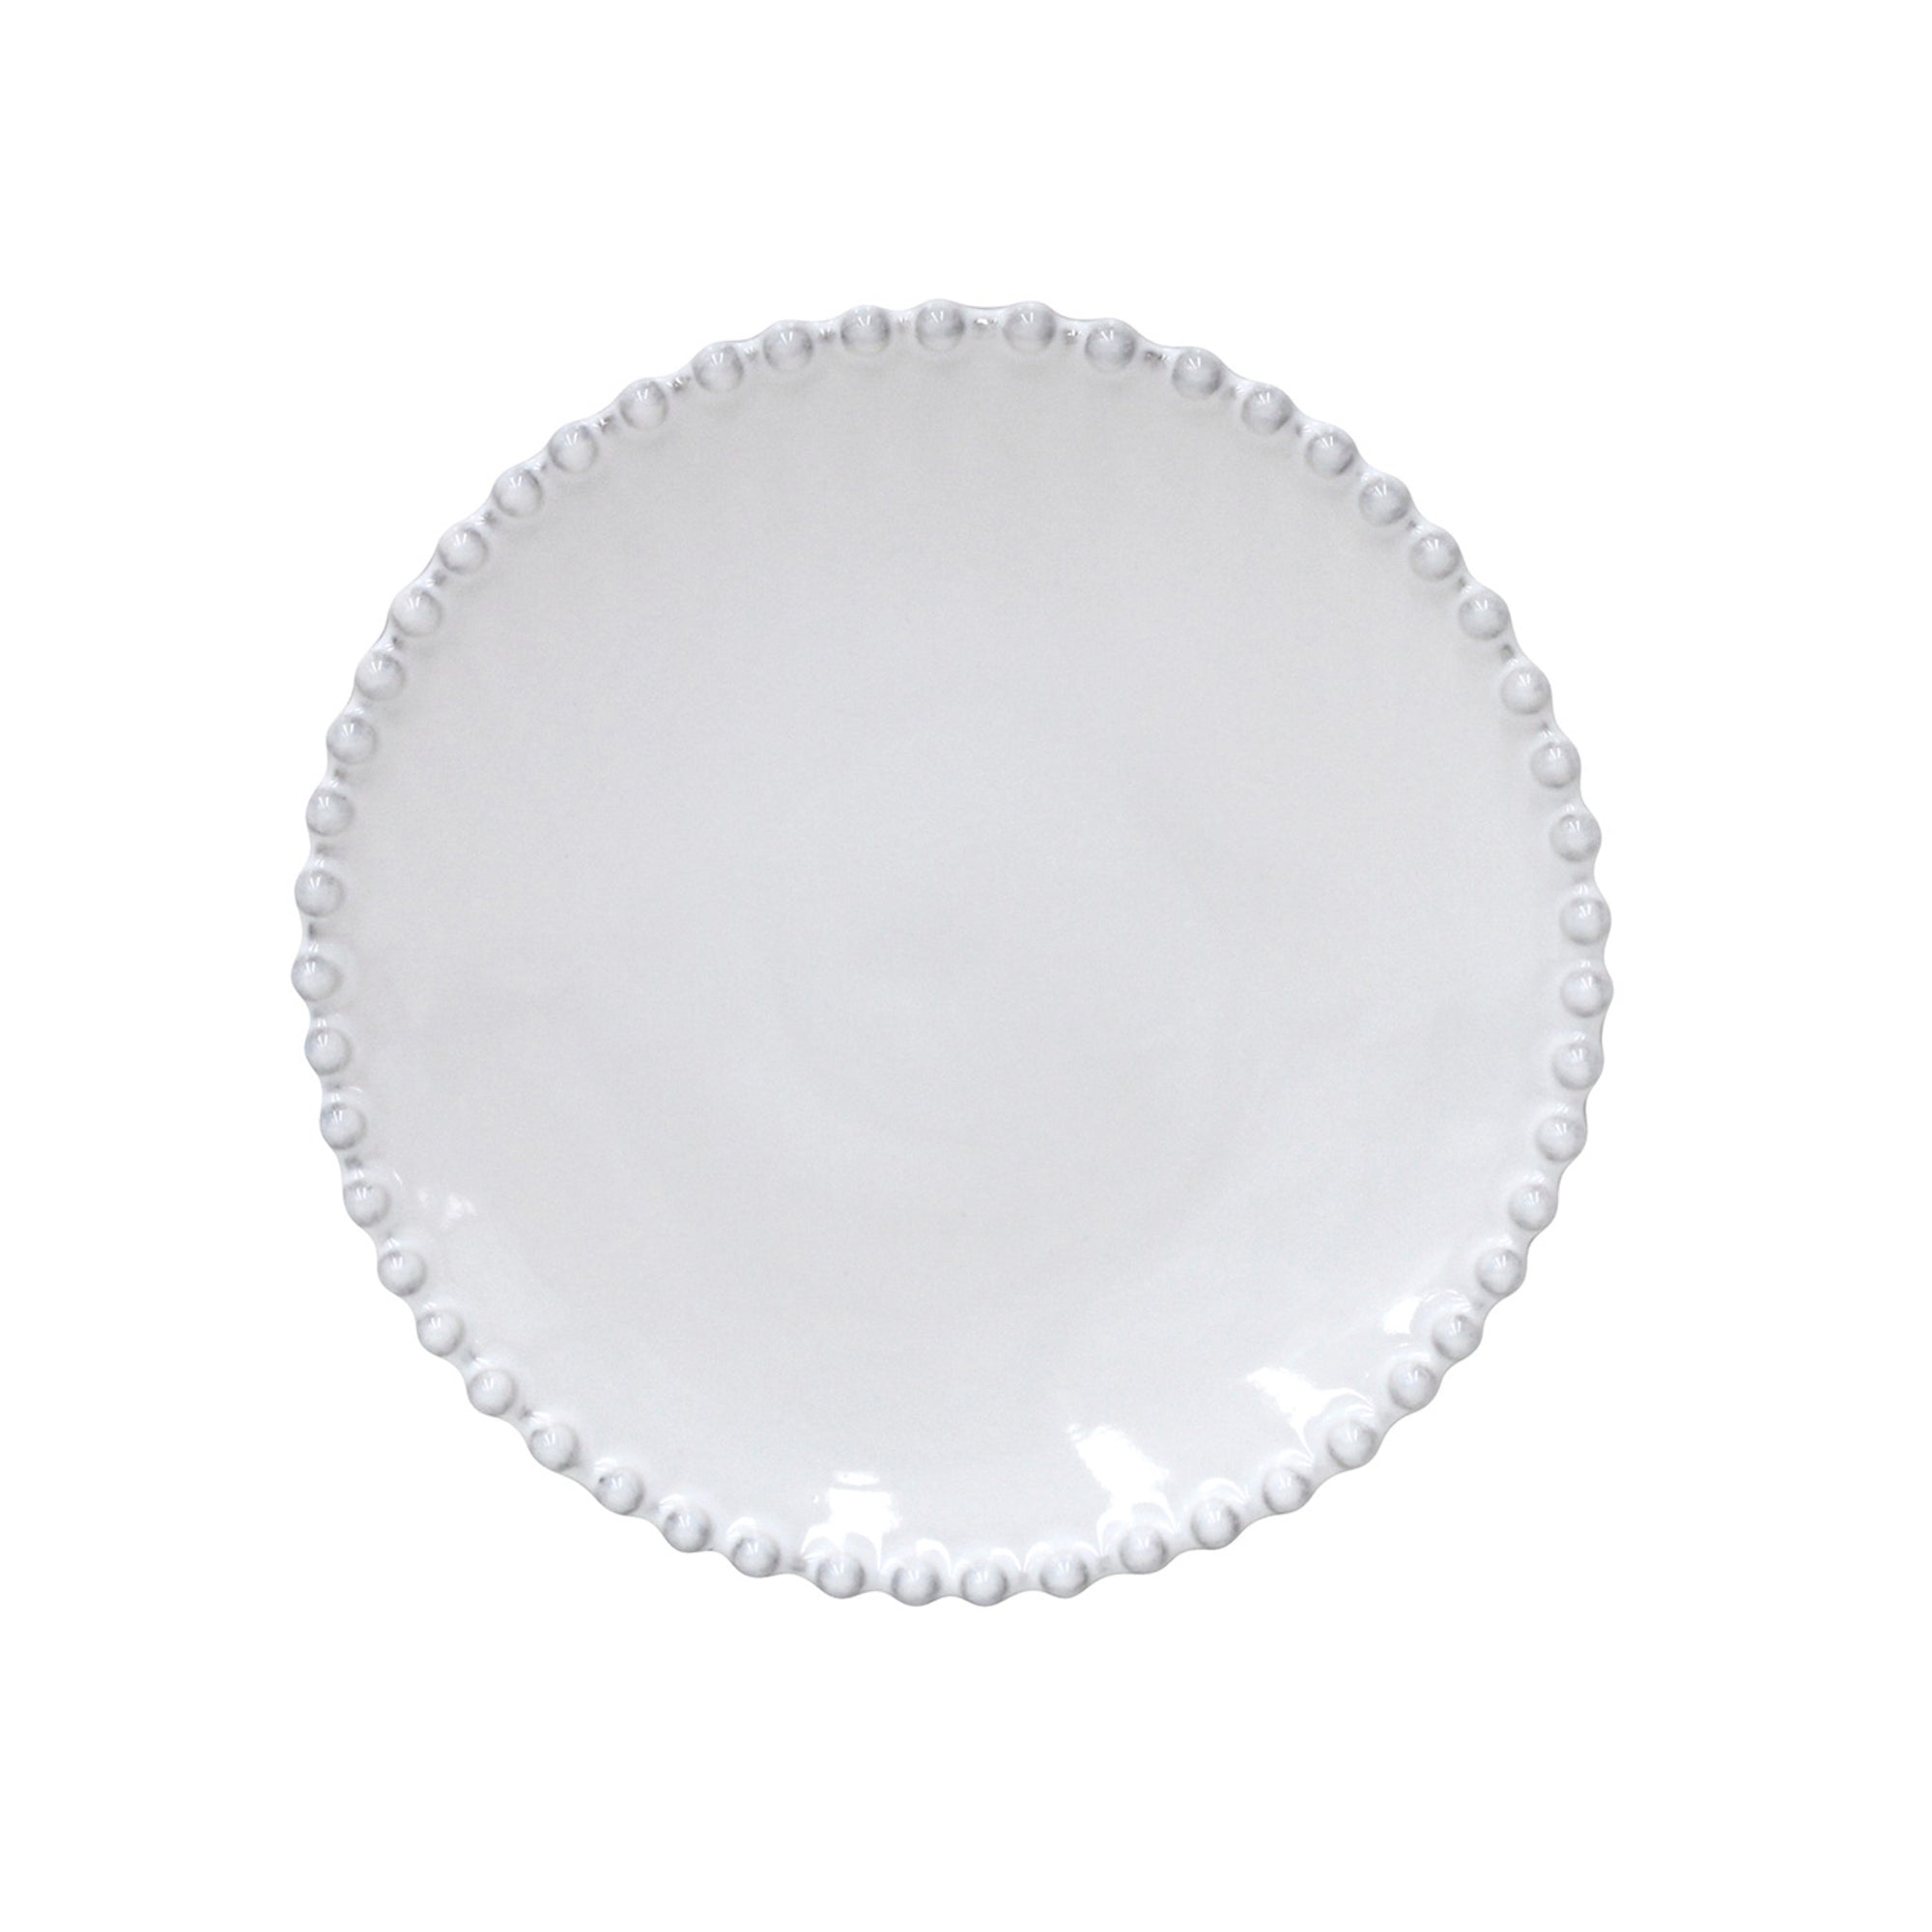 Costa Nova Costa Nova Pearl White Bread Plate 17 cm | 7'' PEP173-02202F